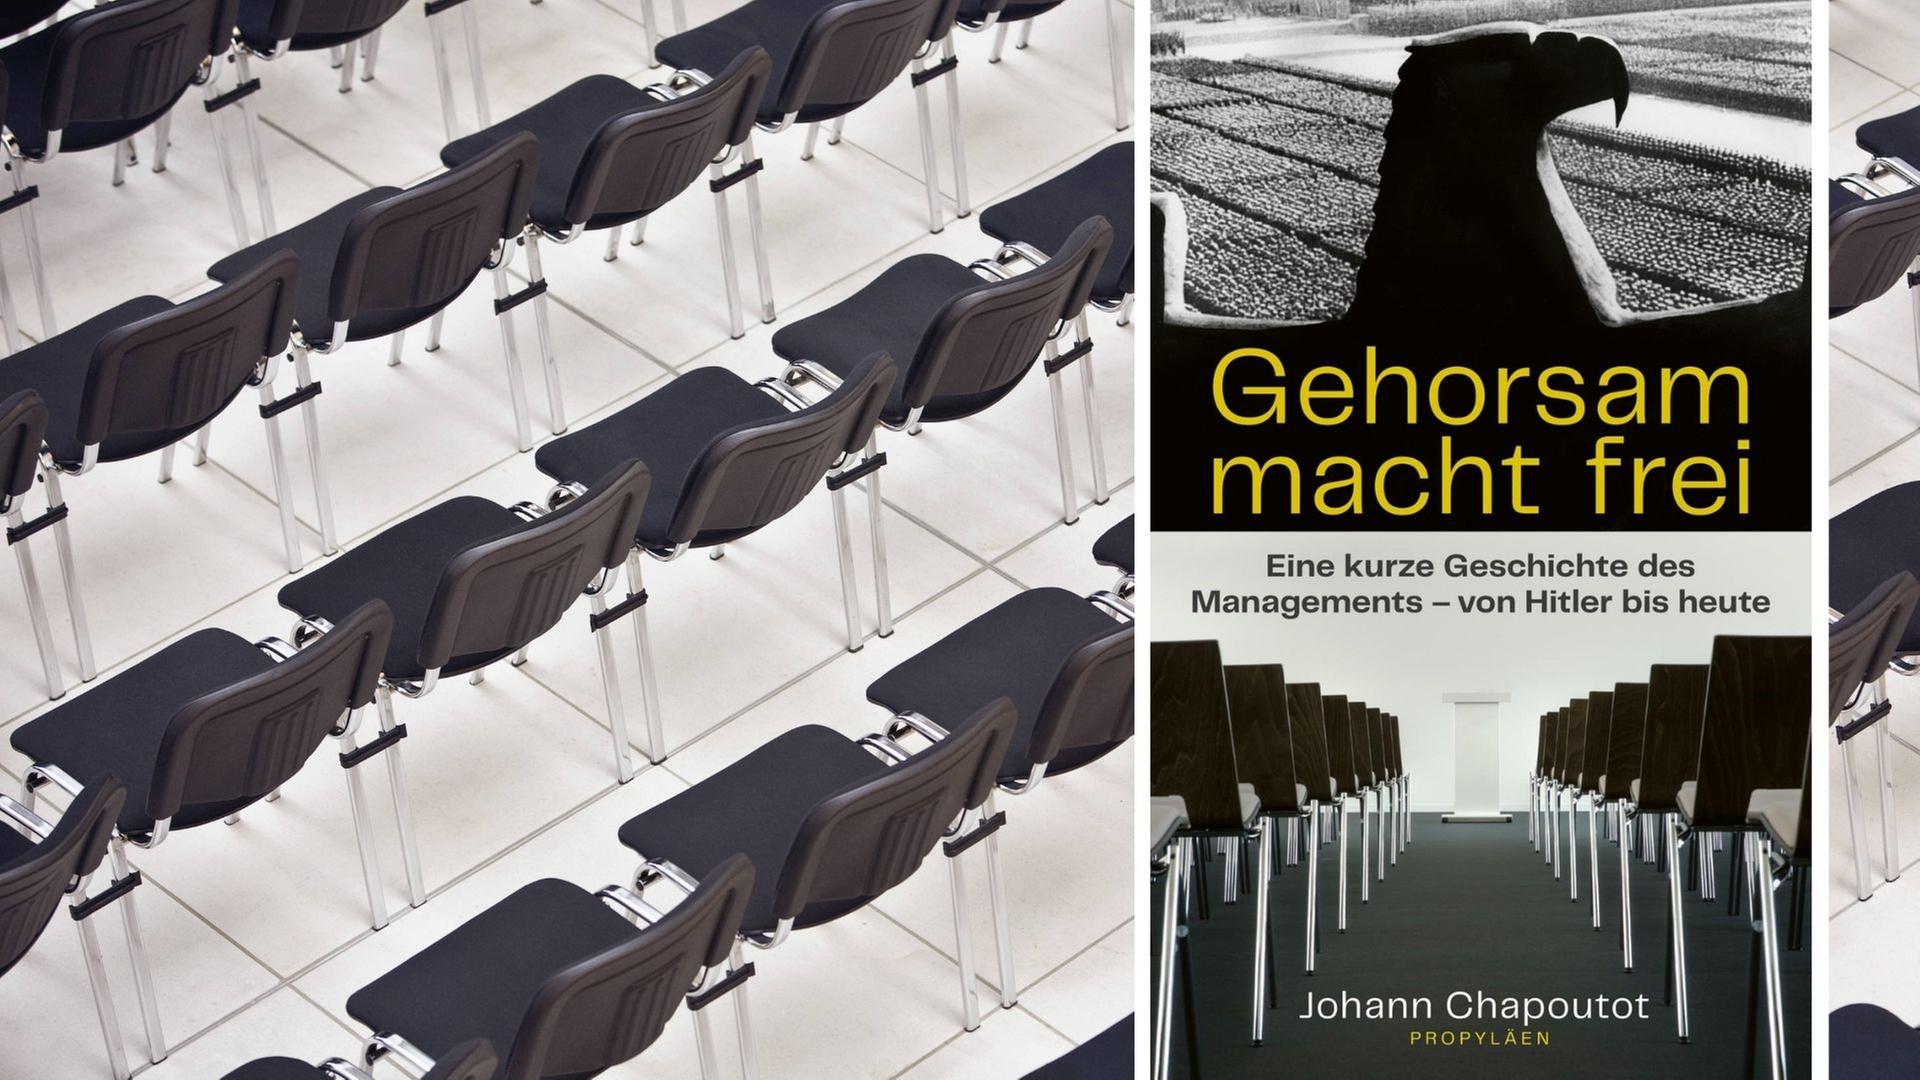 Buchcover Johann Chapoutot: "Gehorsam macht frei. Eine kurze Geschichte des Managements – von Hitler bis heute"